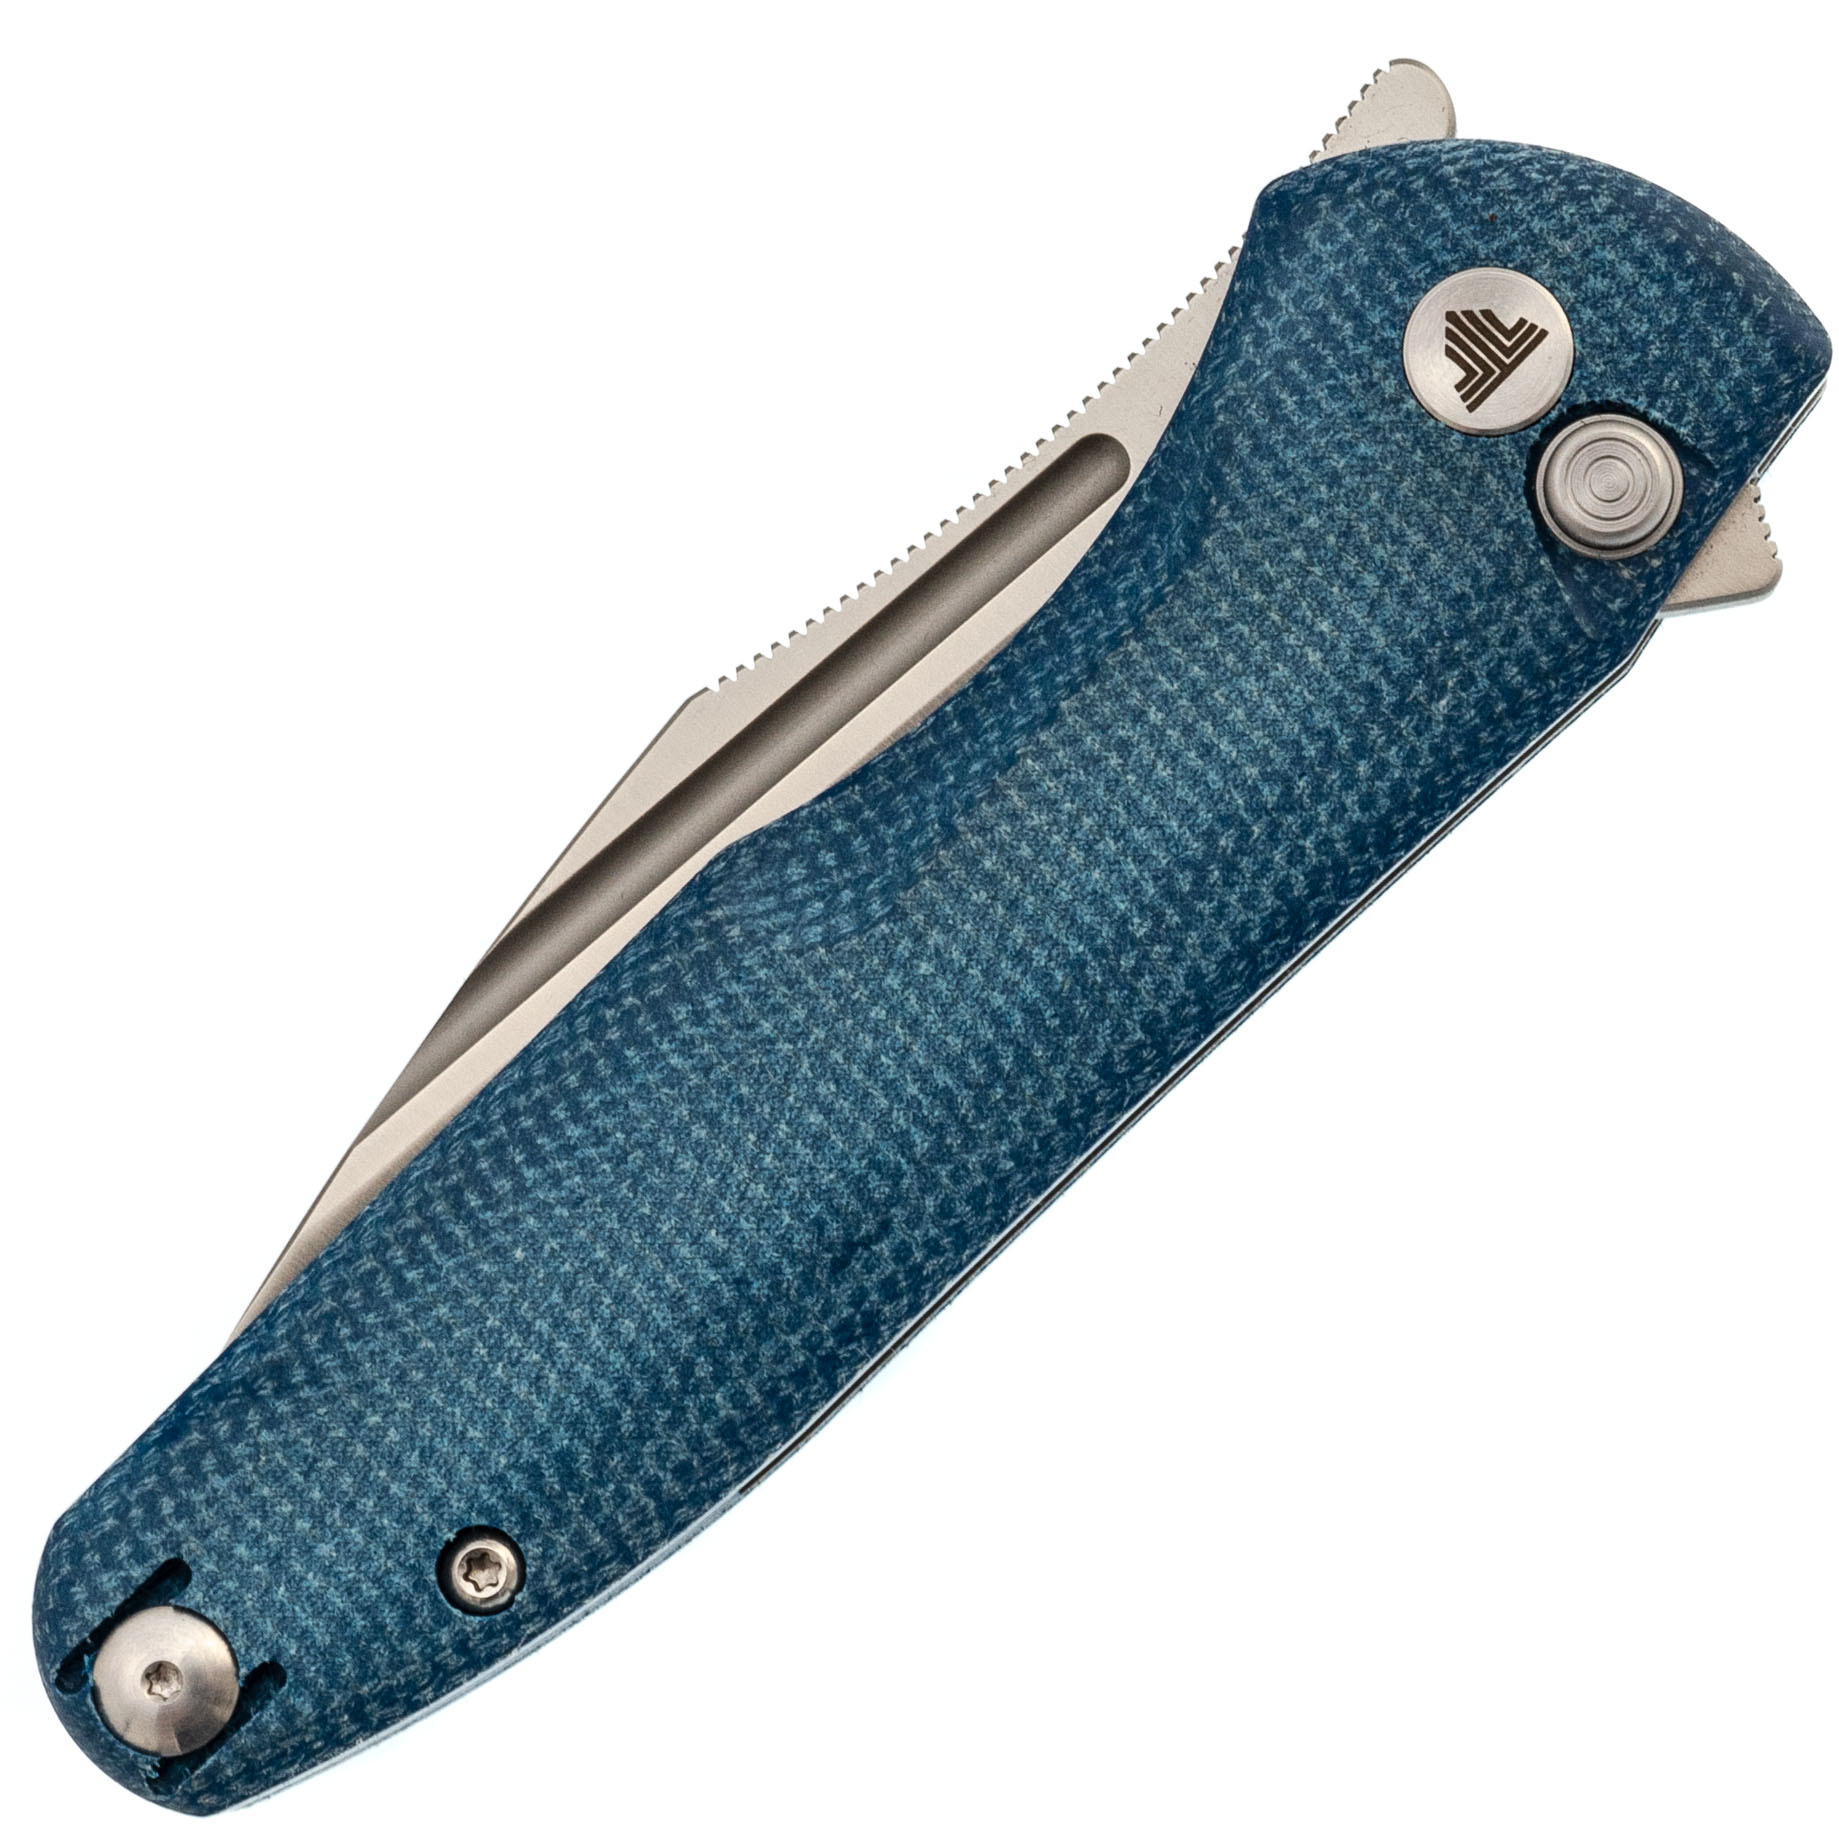 Складной нож Trivisa Antliae-04LMW, сталь 14C28N, рукоять микарта, синий - фото 10